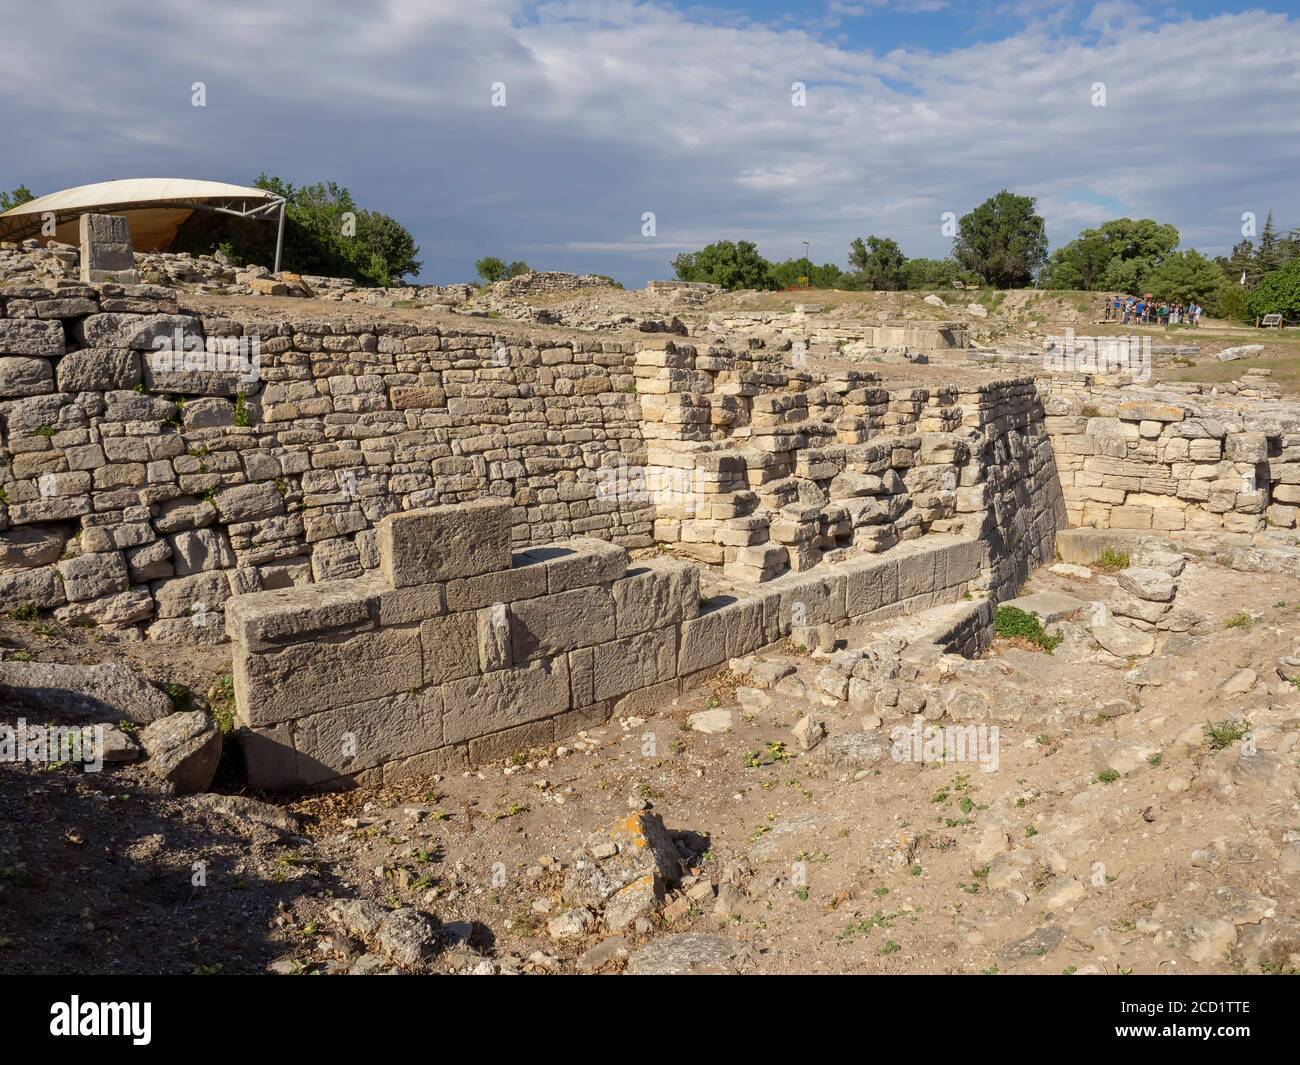 Ruines de l'ancienne ville légendaire de Troy dans la province de Canakkale, Turquie Banque D'Images